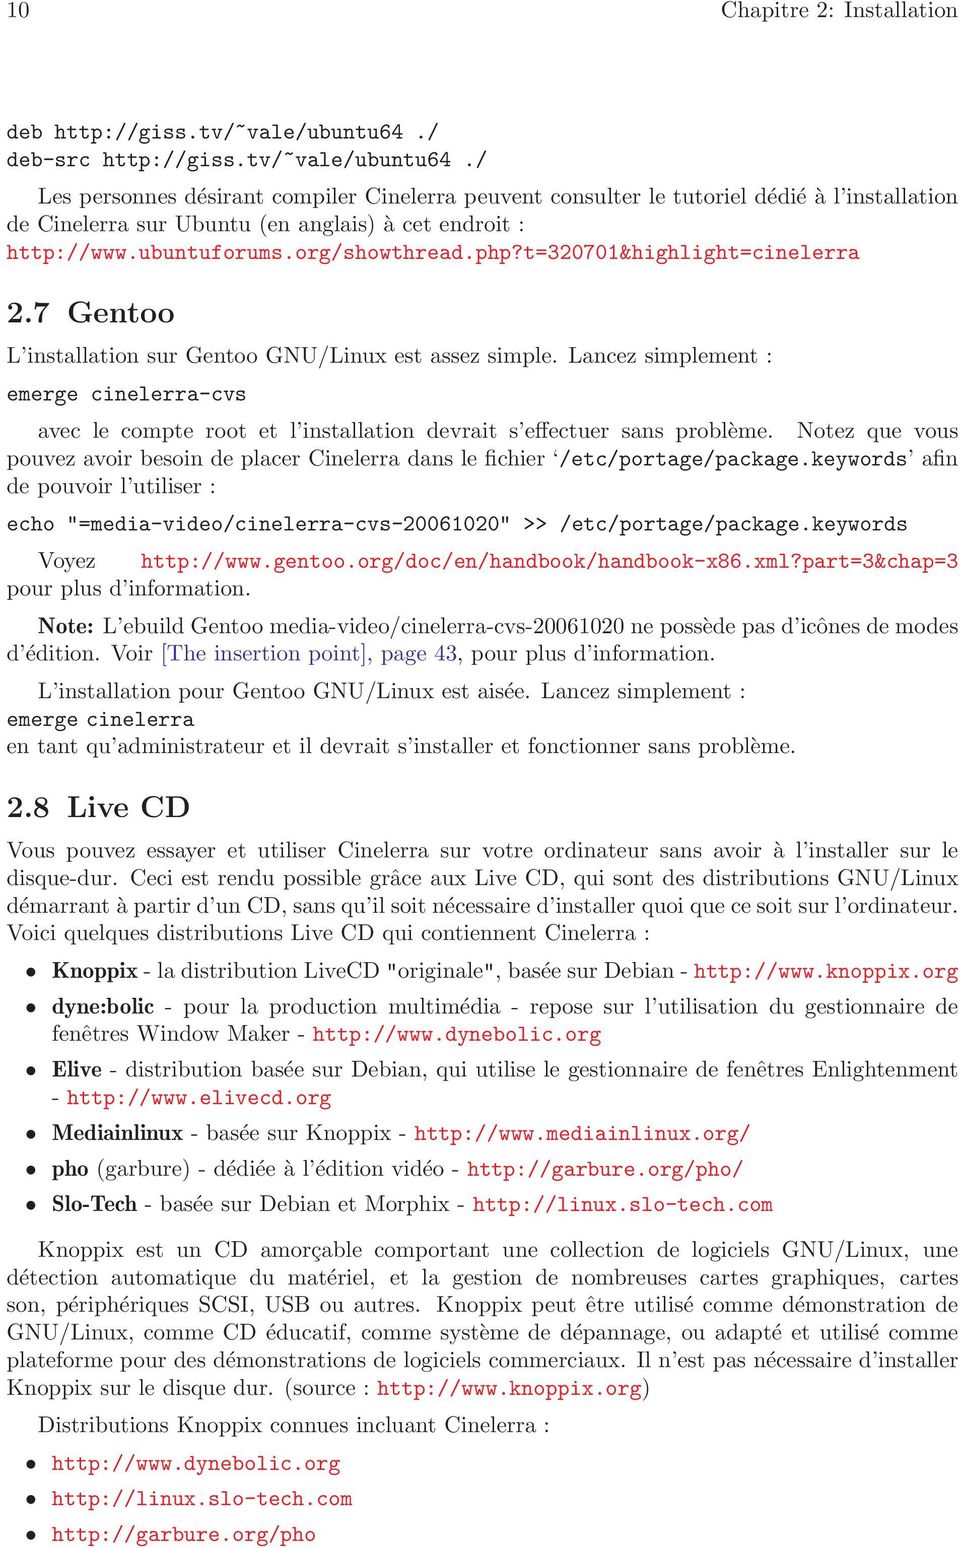 / Les personnes désirant compiler Cinelerra peuvent consulter le tutoriel dédié à l installation de Cinelerra sur Ubuntu (en anglais) à cet endroit : http://www.ubuntuforums.org/showthread.php?